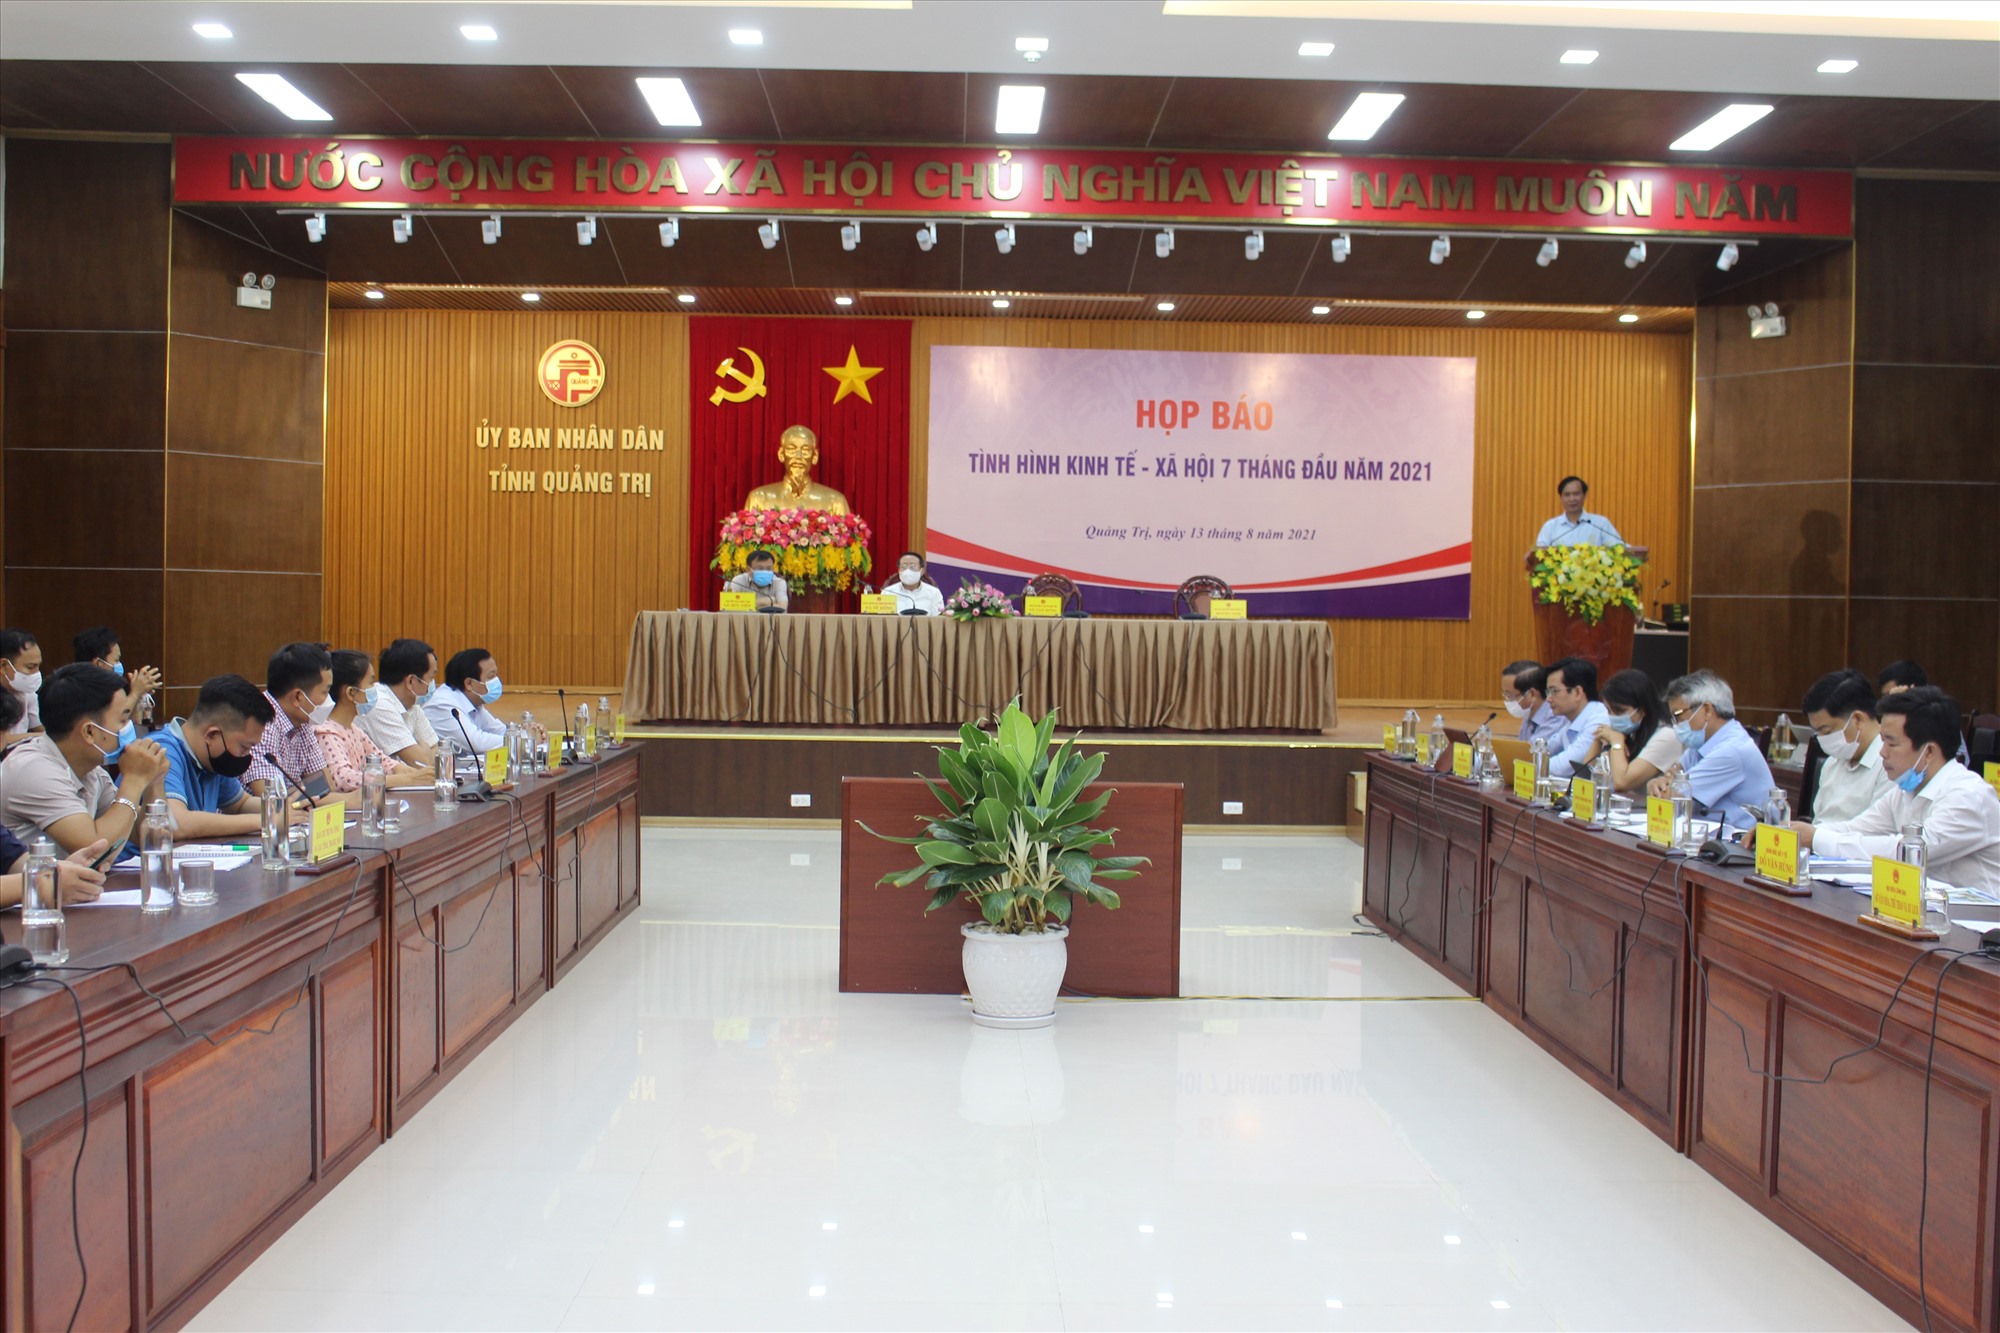 Chủ tịch UBND tỉnh Võ Văn Hưng trao đổi thông tin tại cuộc họp báo - Ảnh: T.T